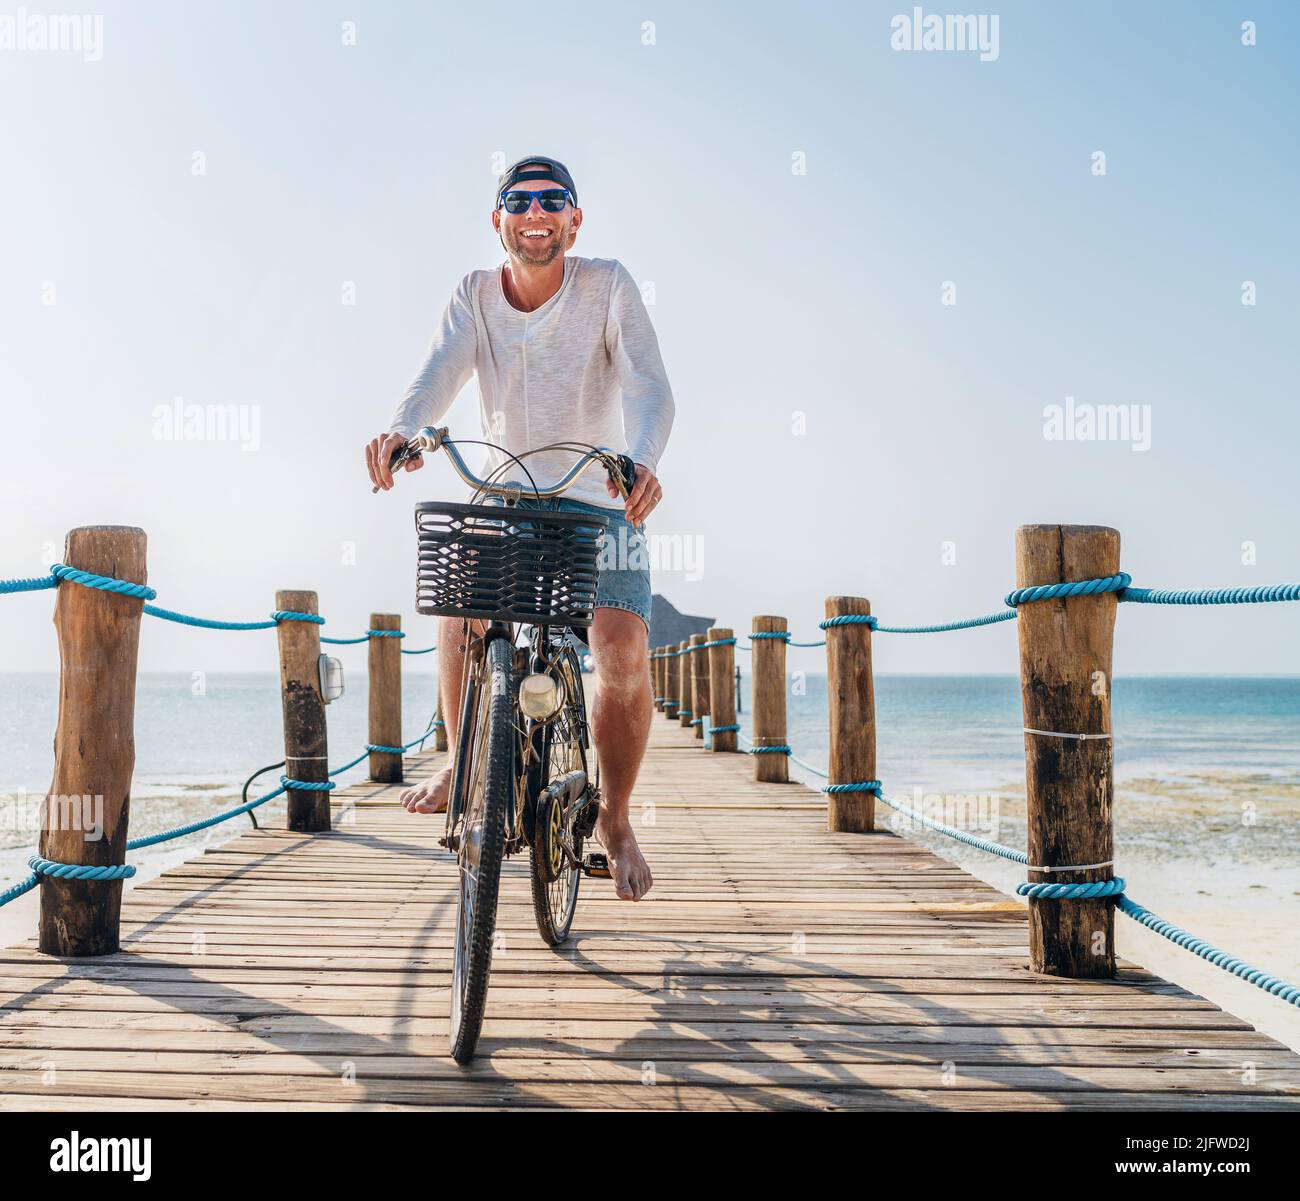 Porträt eines glücklichen lächelnden Mannes, gekleidet in leichte Sommerkleidung und Sonnenbrille, der auf dem hölzernen Seebrücke mit dem Fahrrad fährt. Sorgloser Urlaub im tropischen Stockfoto